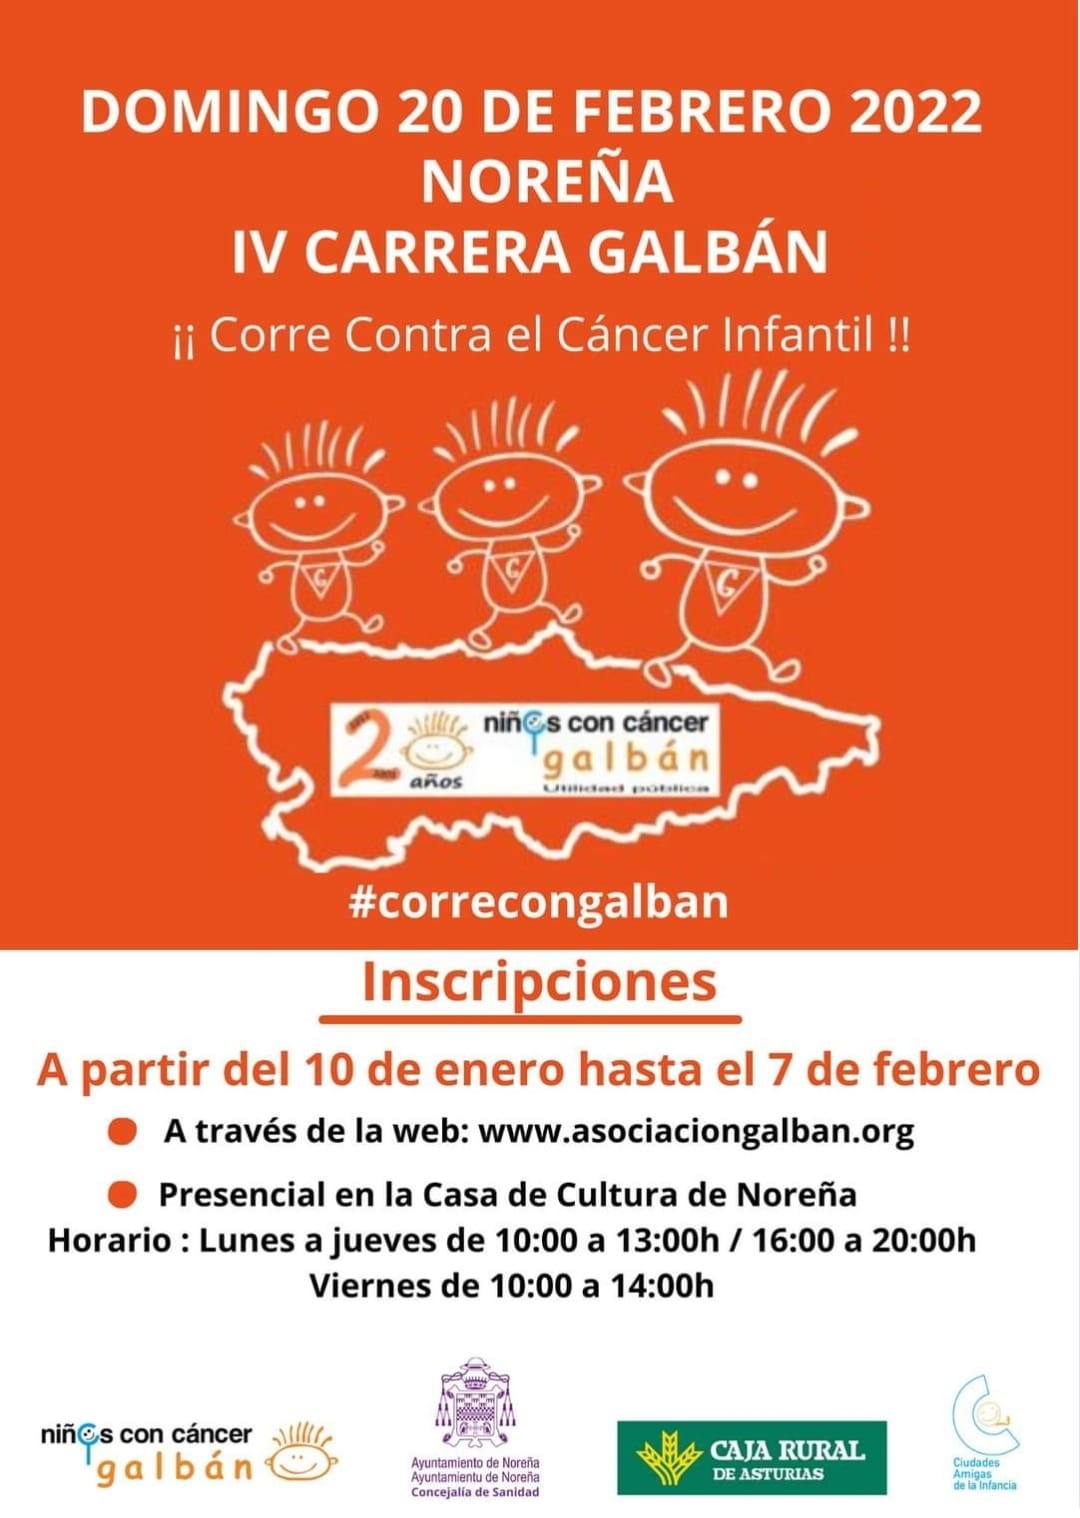 Carrera Galbán